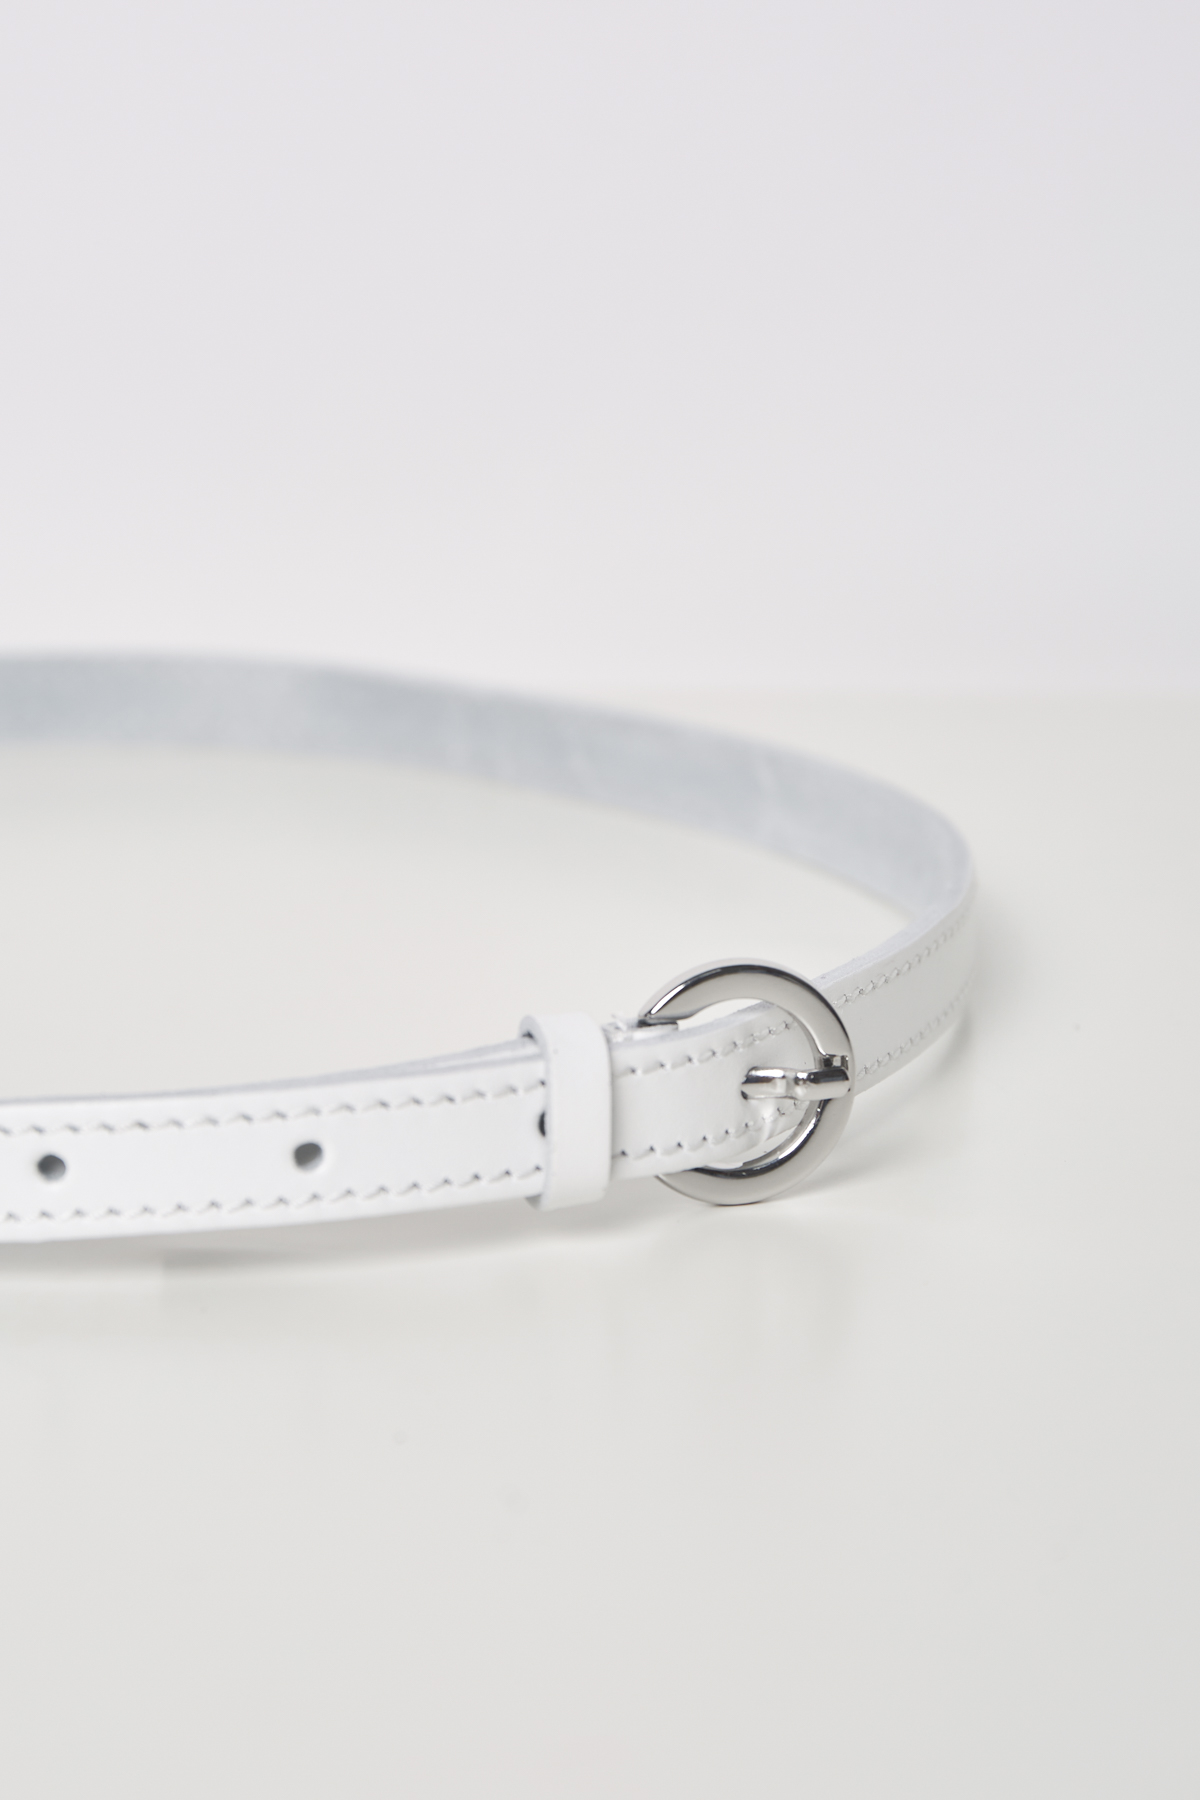 White leather narrow belt, photo 1